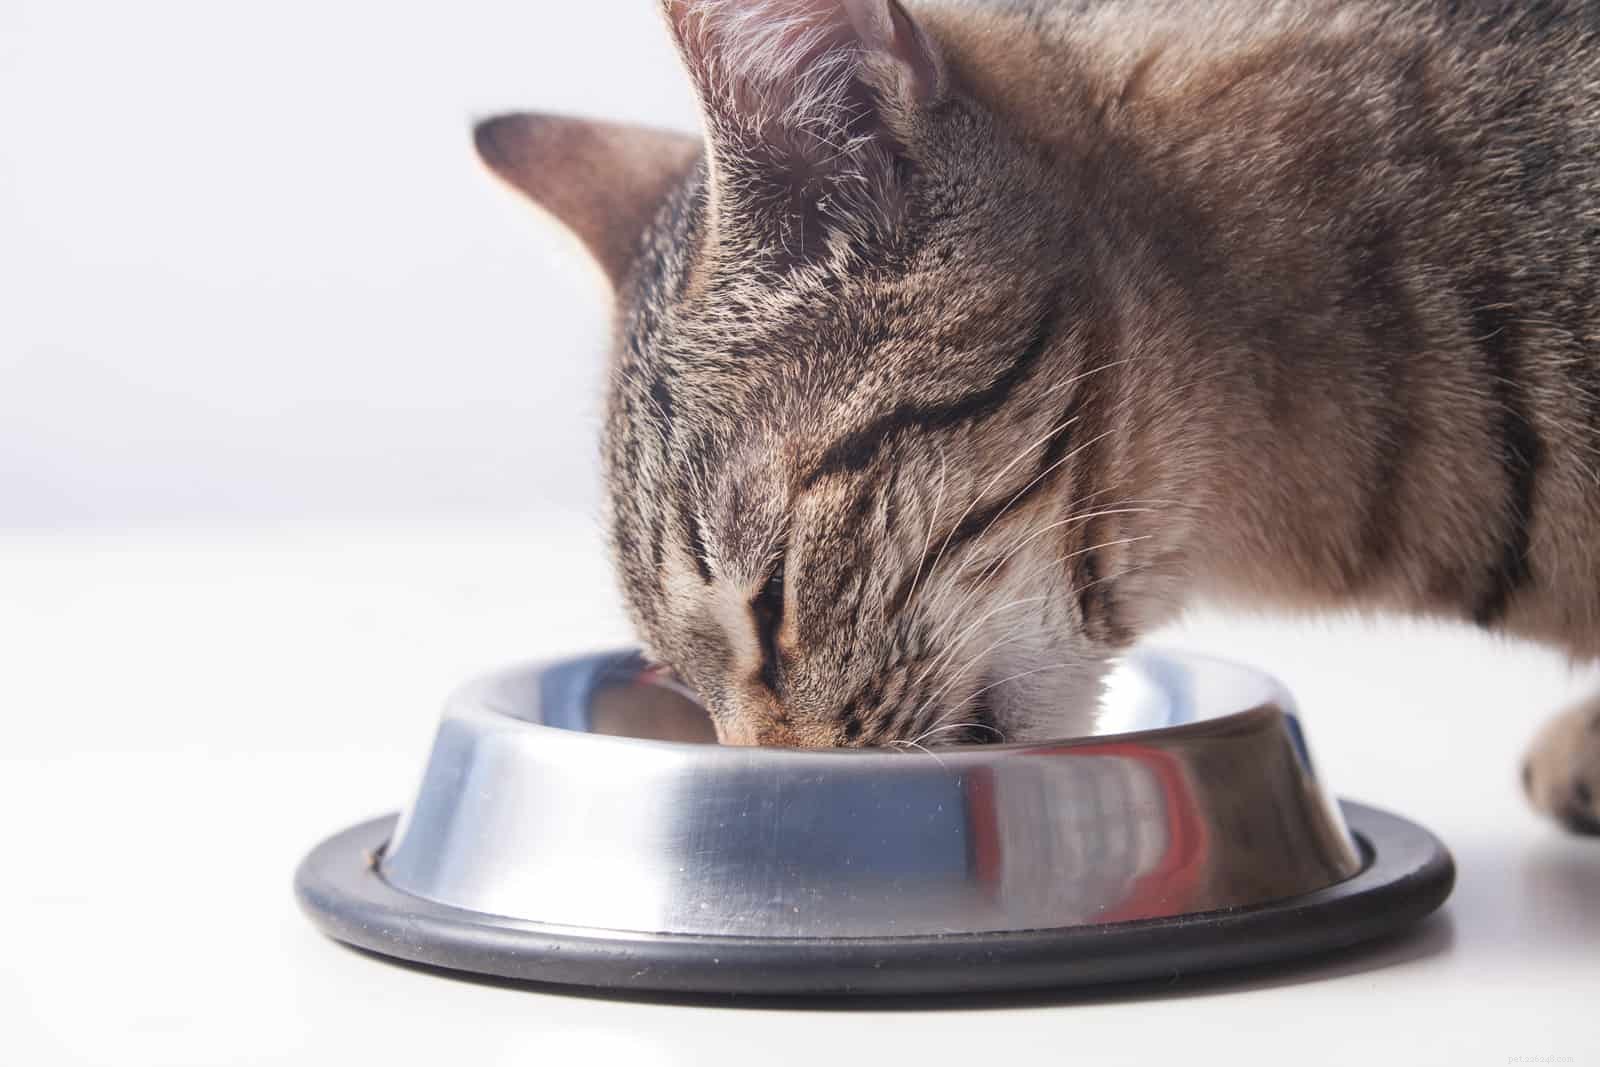 고양이가 먹을 때 눈을 감는 이유는 무엇입니까?